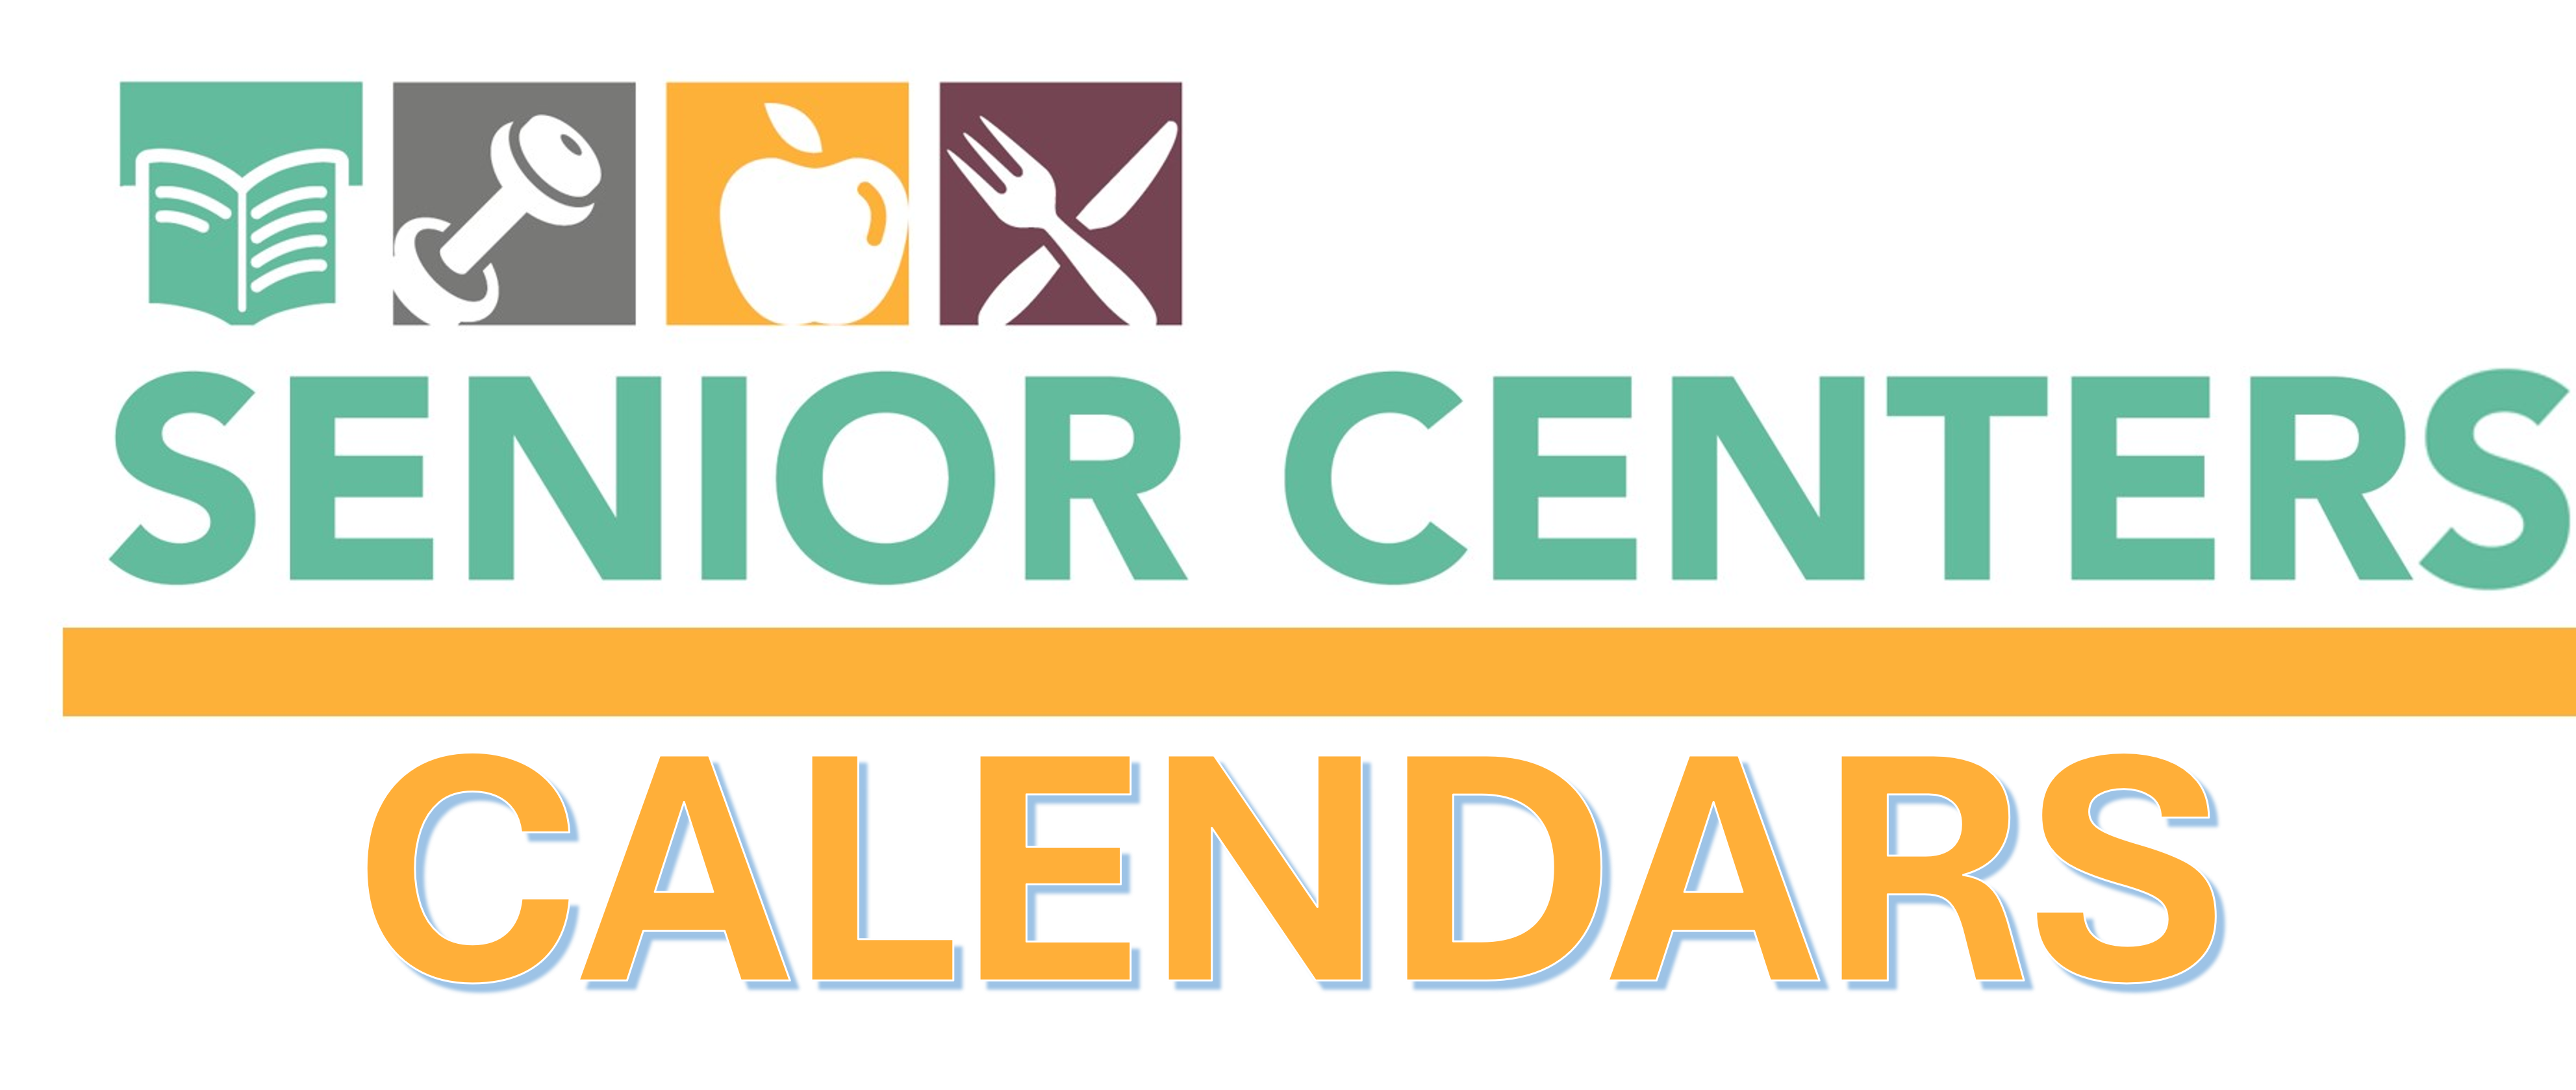 Baltimore City Senior Centers Calendar